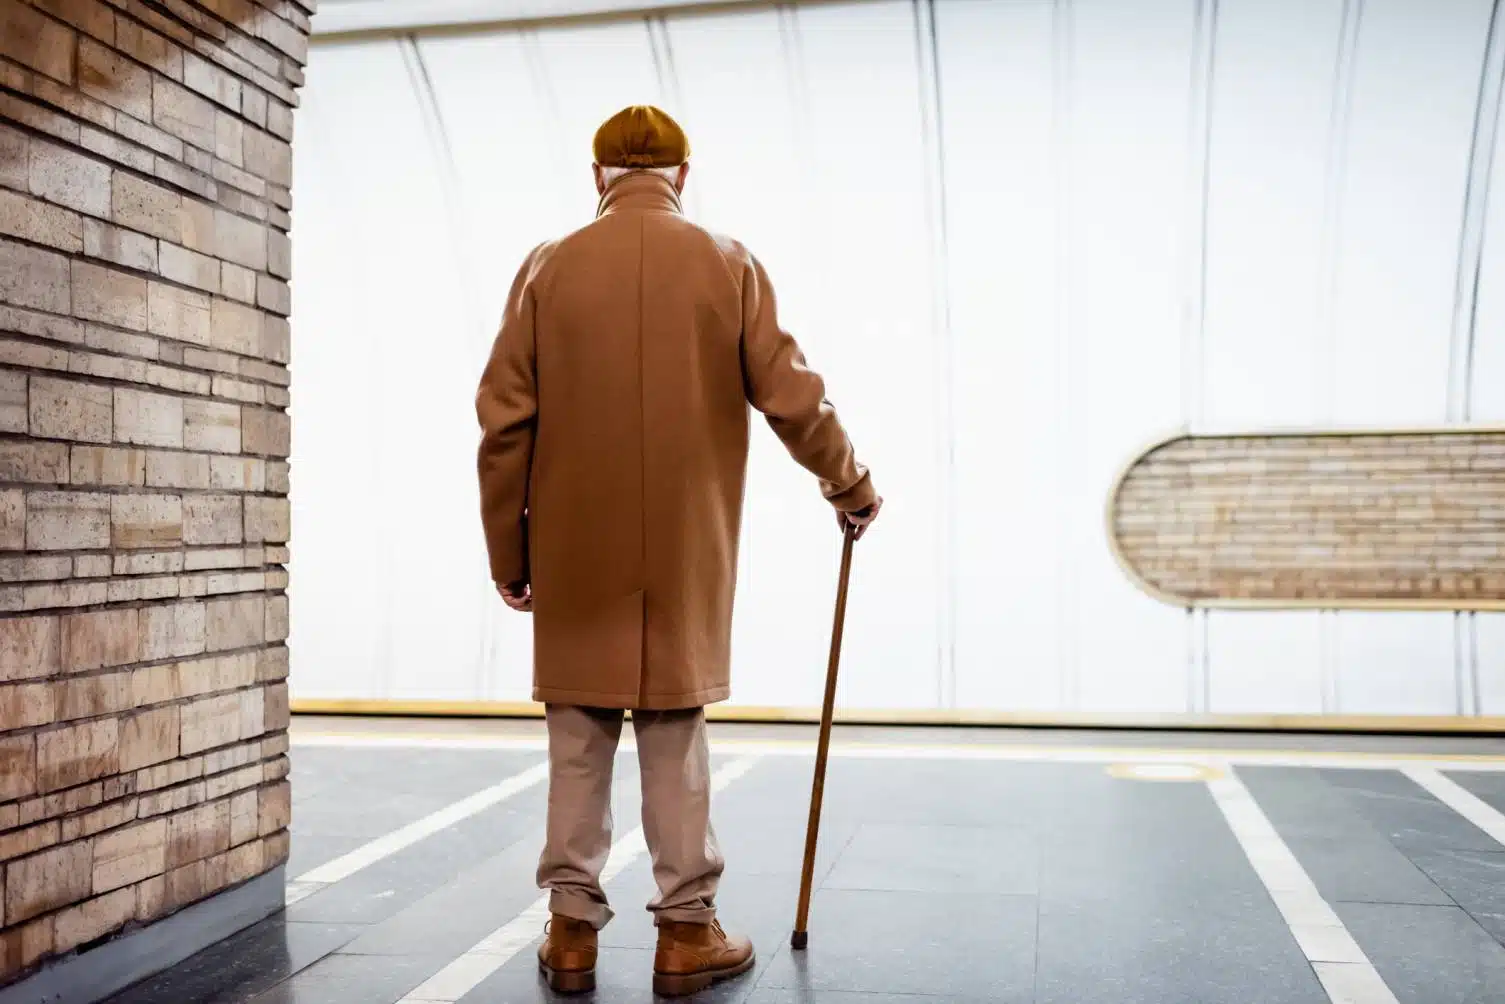 canne marche tripode accessoire personne âgée senior marcher aide modèle mobilité autonomie